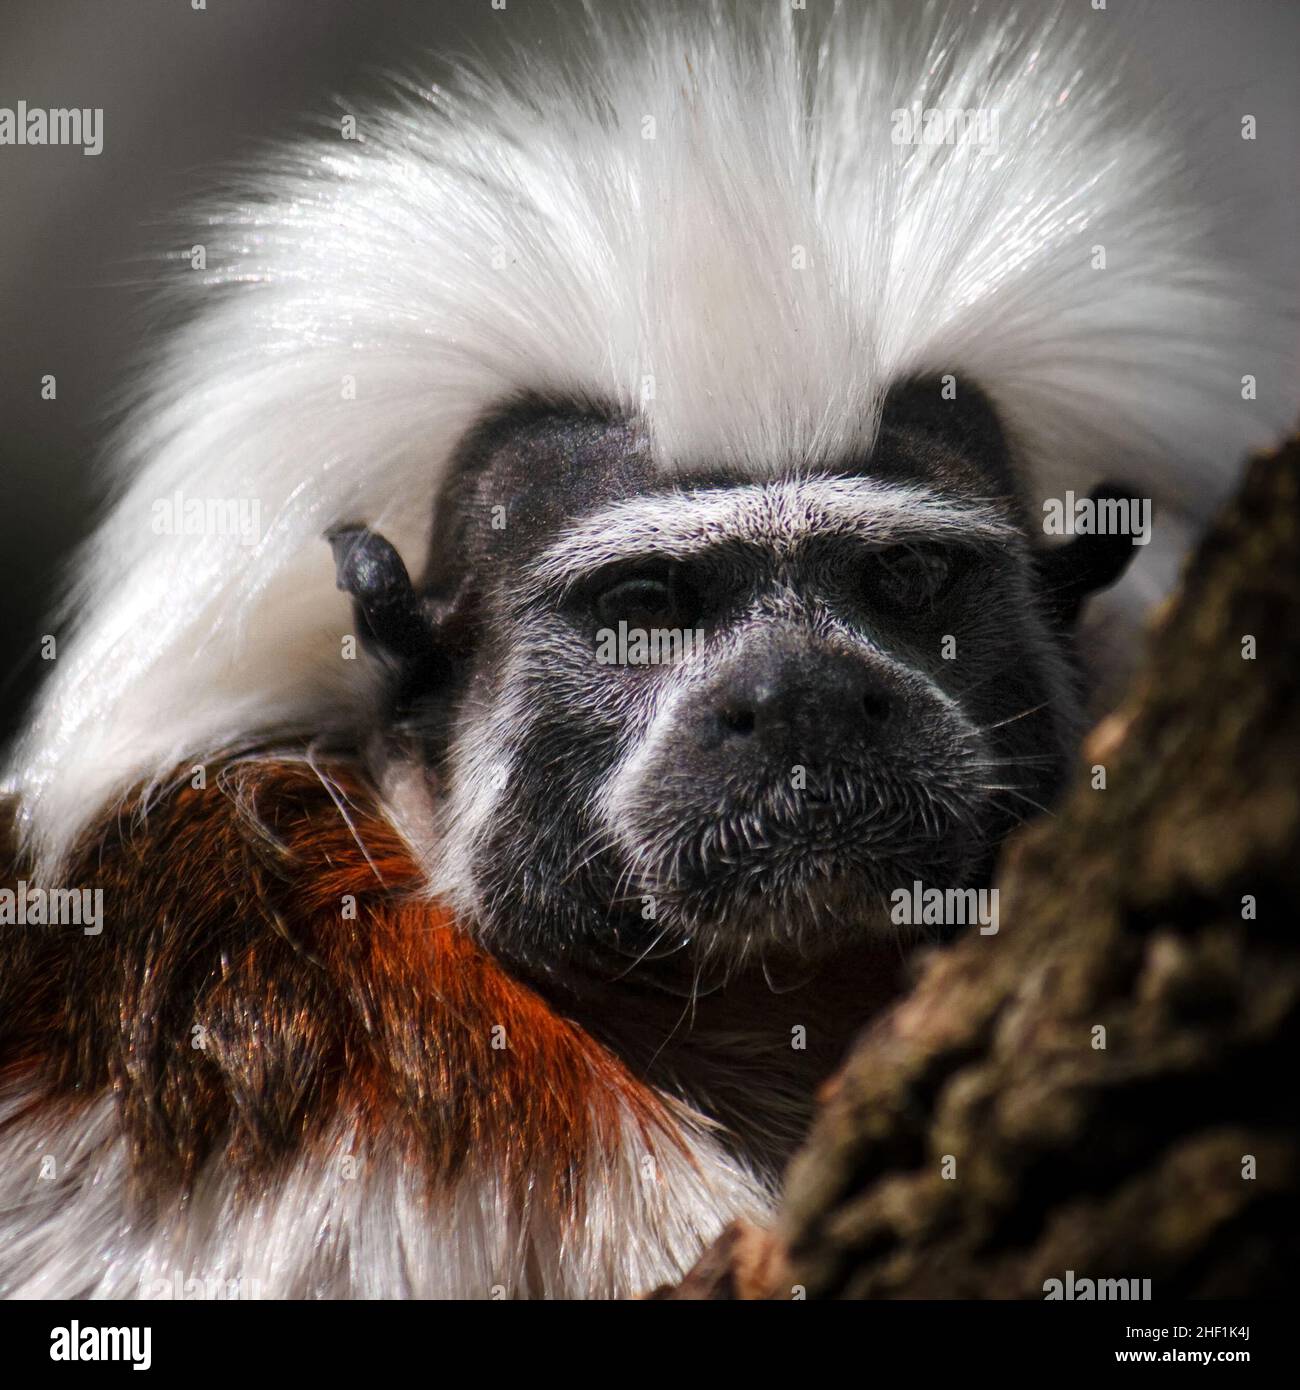 Portrait of small monkey cotton-top tamarin, Saguinus oedipus. Stock Photo